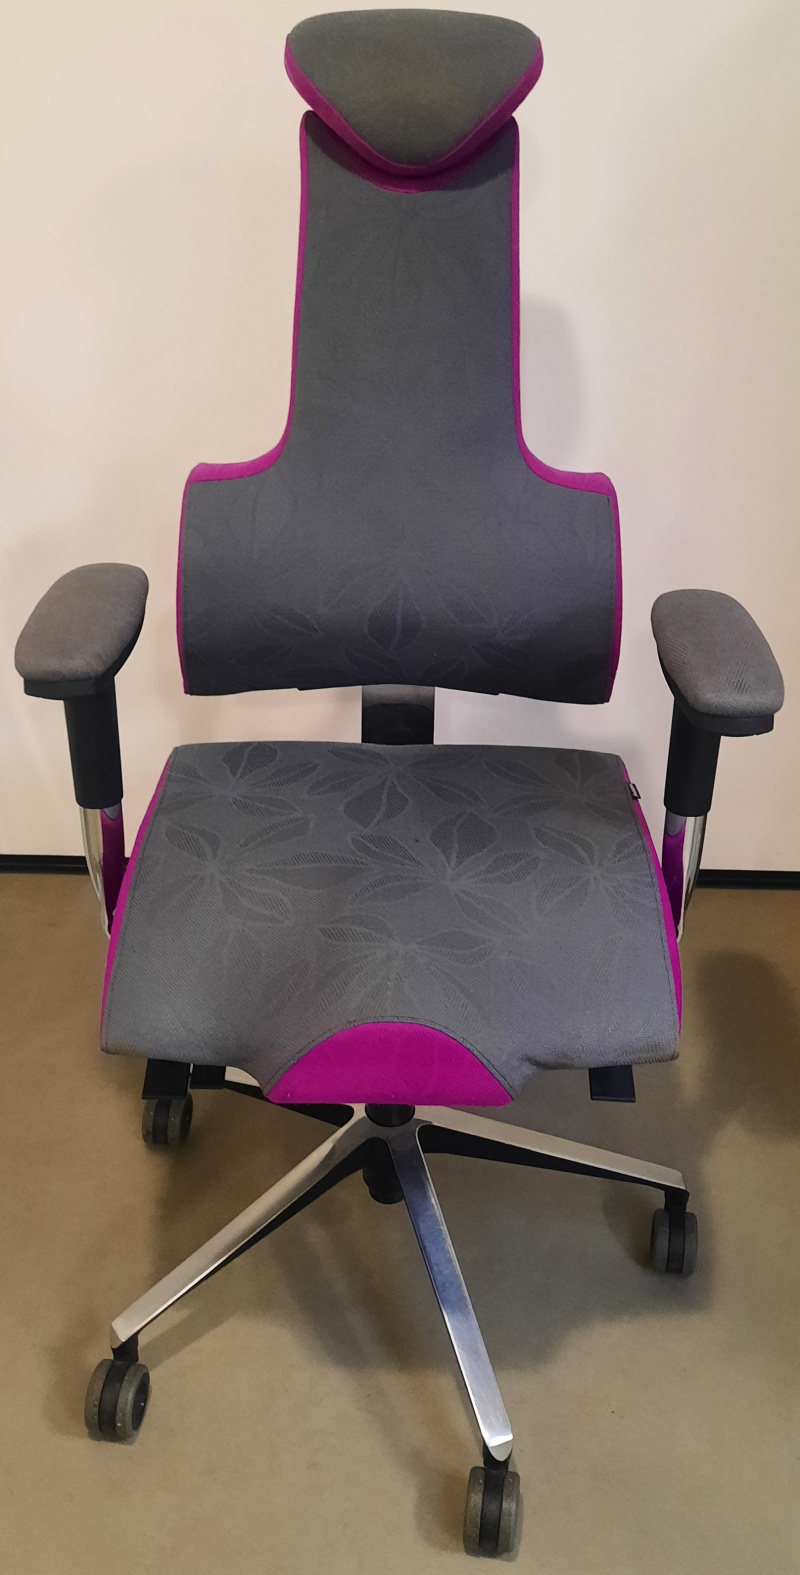 Terapeutická židle THERAPIA ENERGY XL PRO 4110 AX62 tmavě šedá/ AX76 světle fialová vzorkový kus PRAHA